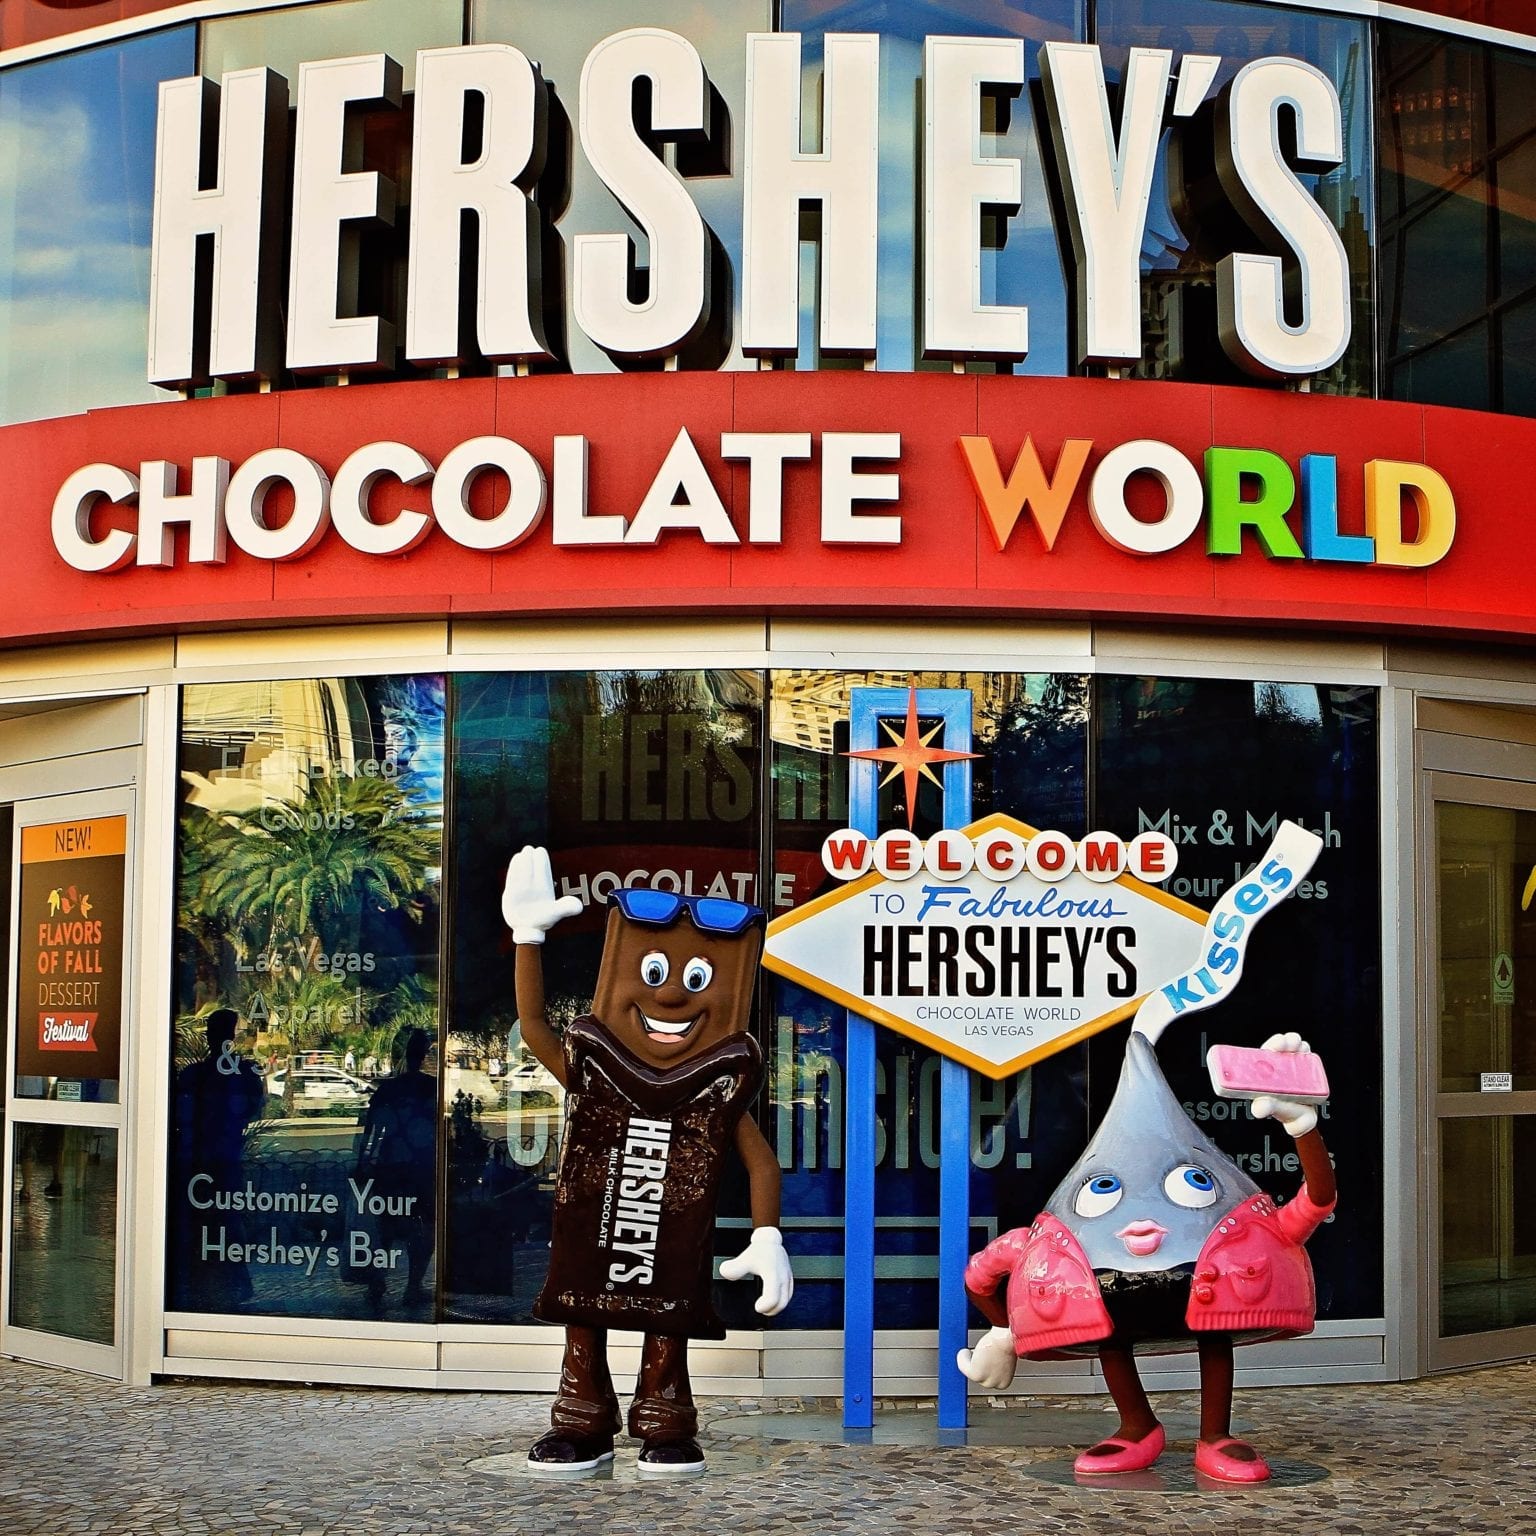 The Hersheys Chocolate World Store In Las Vegas 1536x1536 